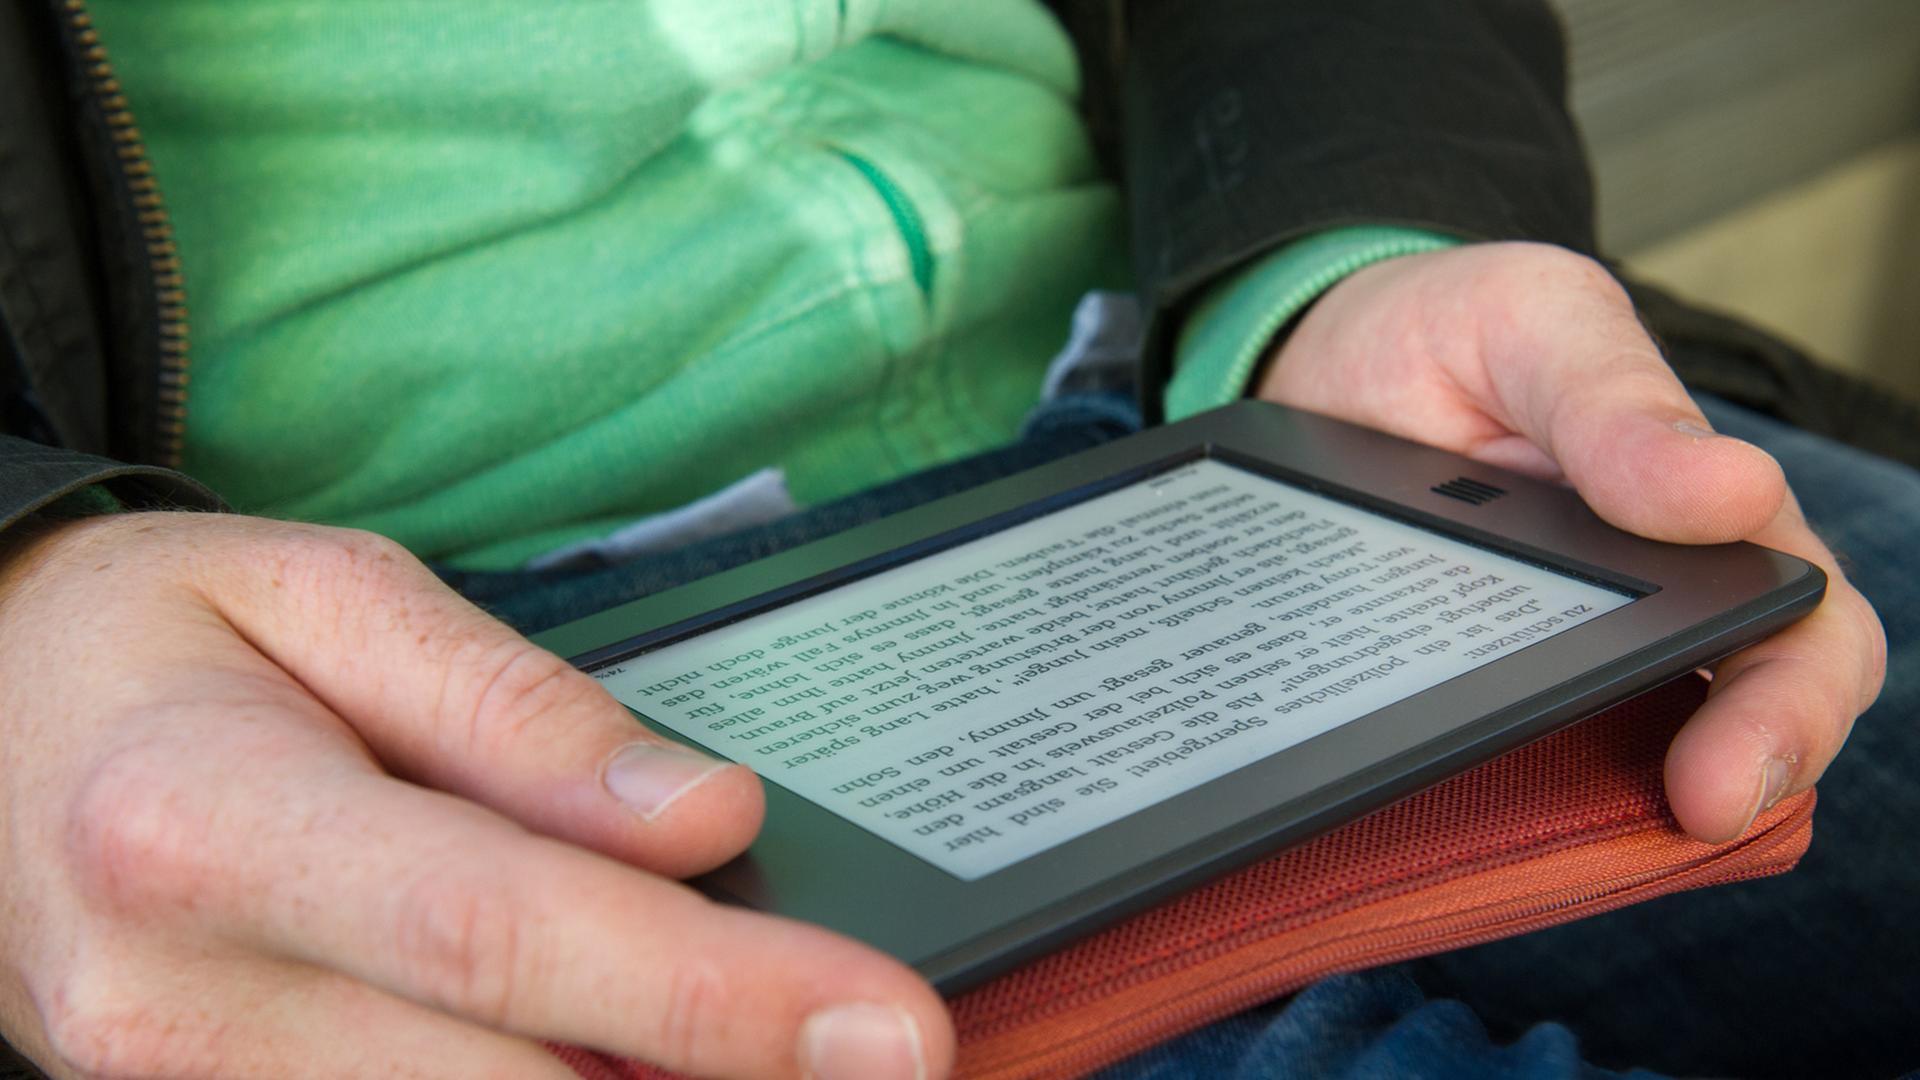 Ein Mann hält am 28.09.2012 in München (Bayern) ein elektronischen Reader der Marke Kindle in seinen Händen.